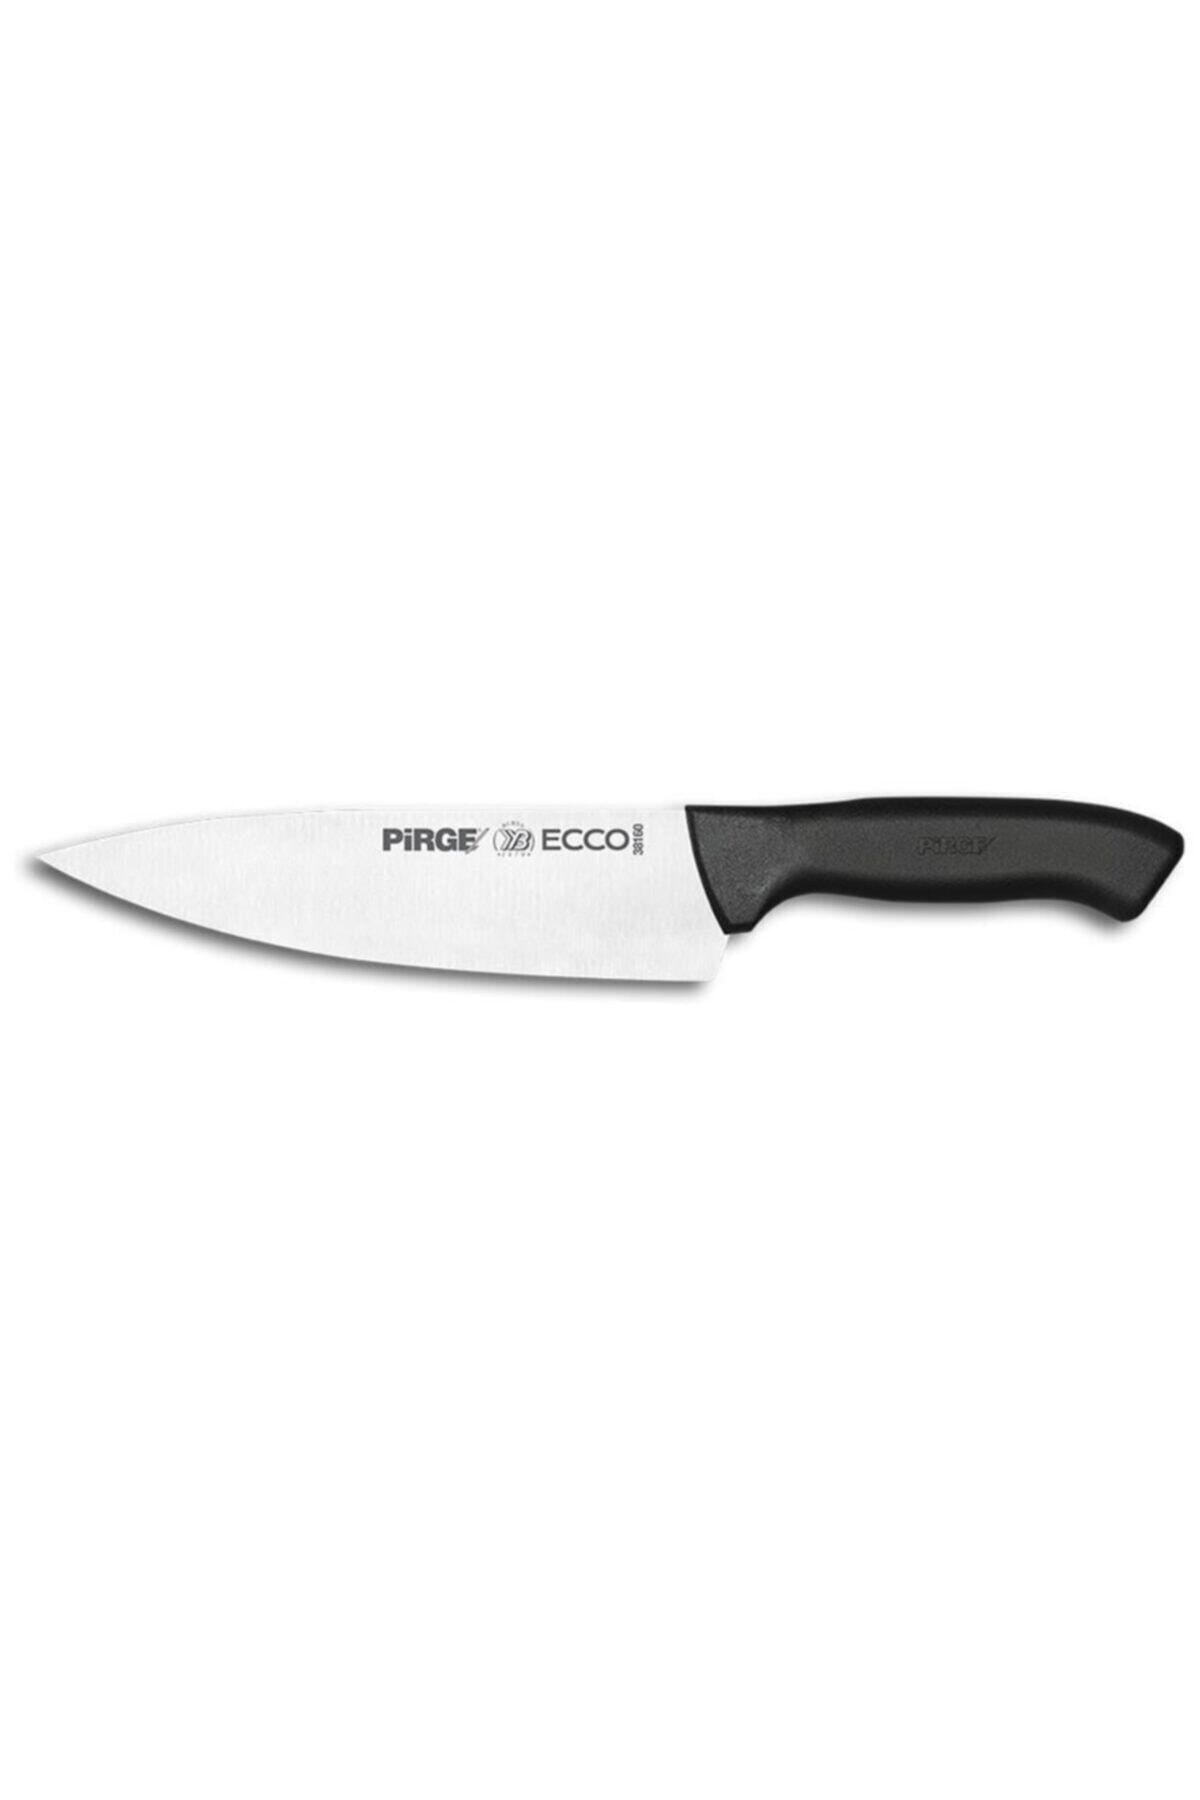 Ecco Şef Bıçağı 19 Cm38160Profesyonel BıçaklarPirge